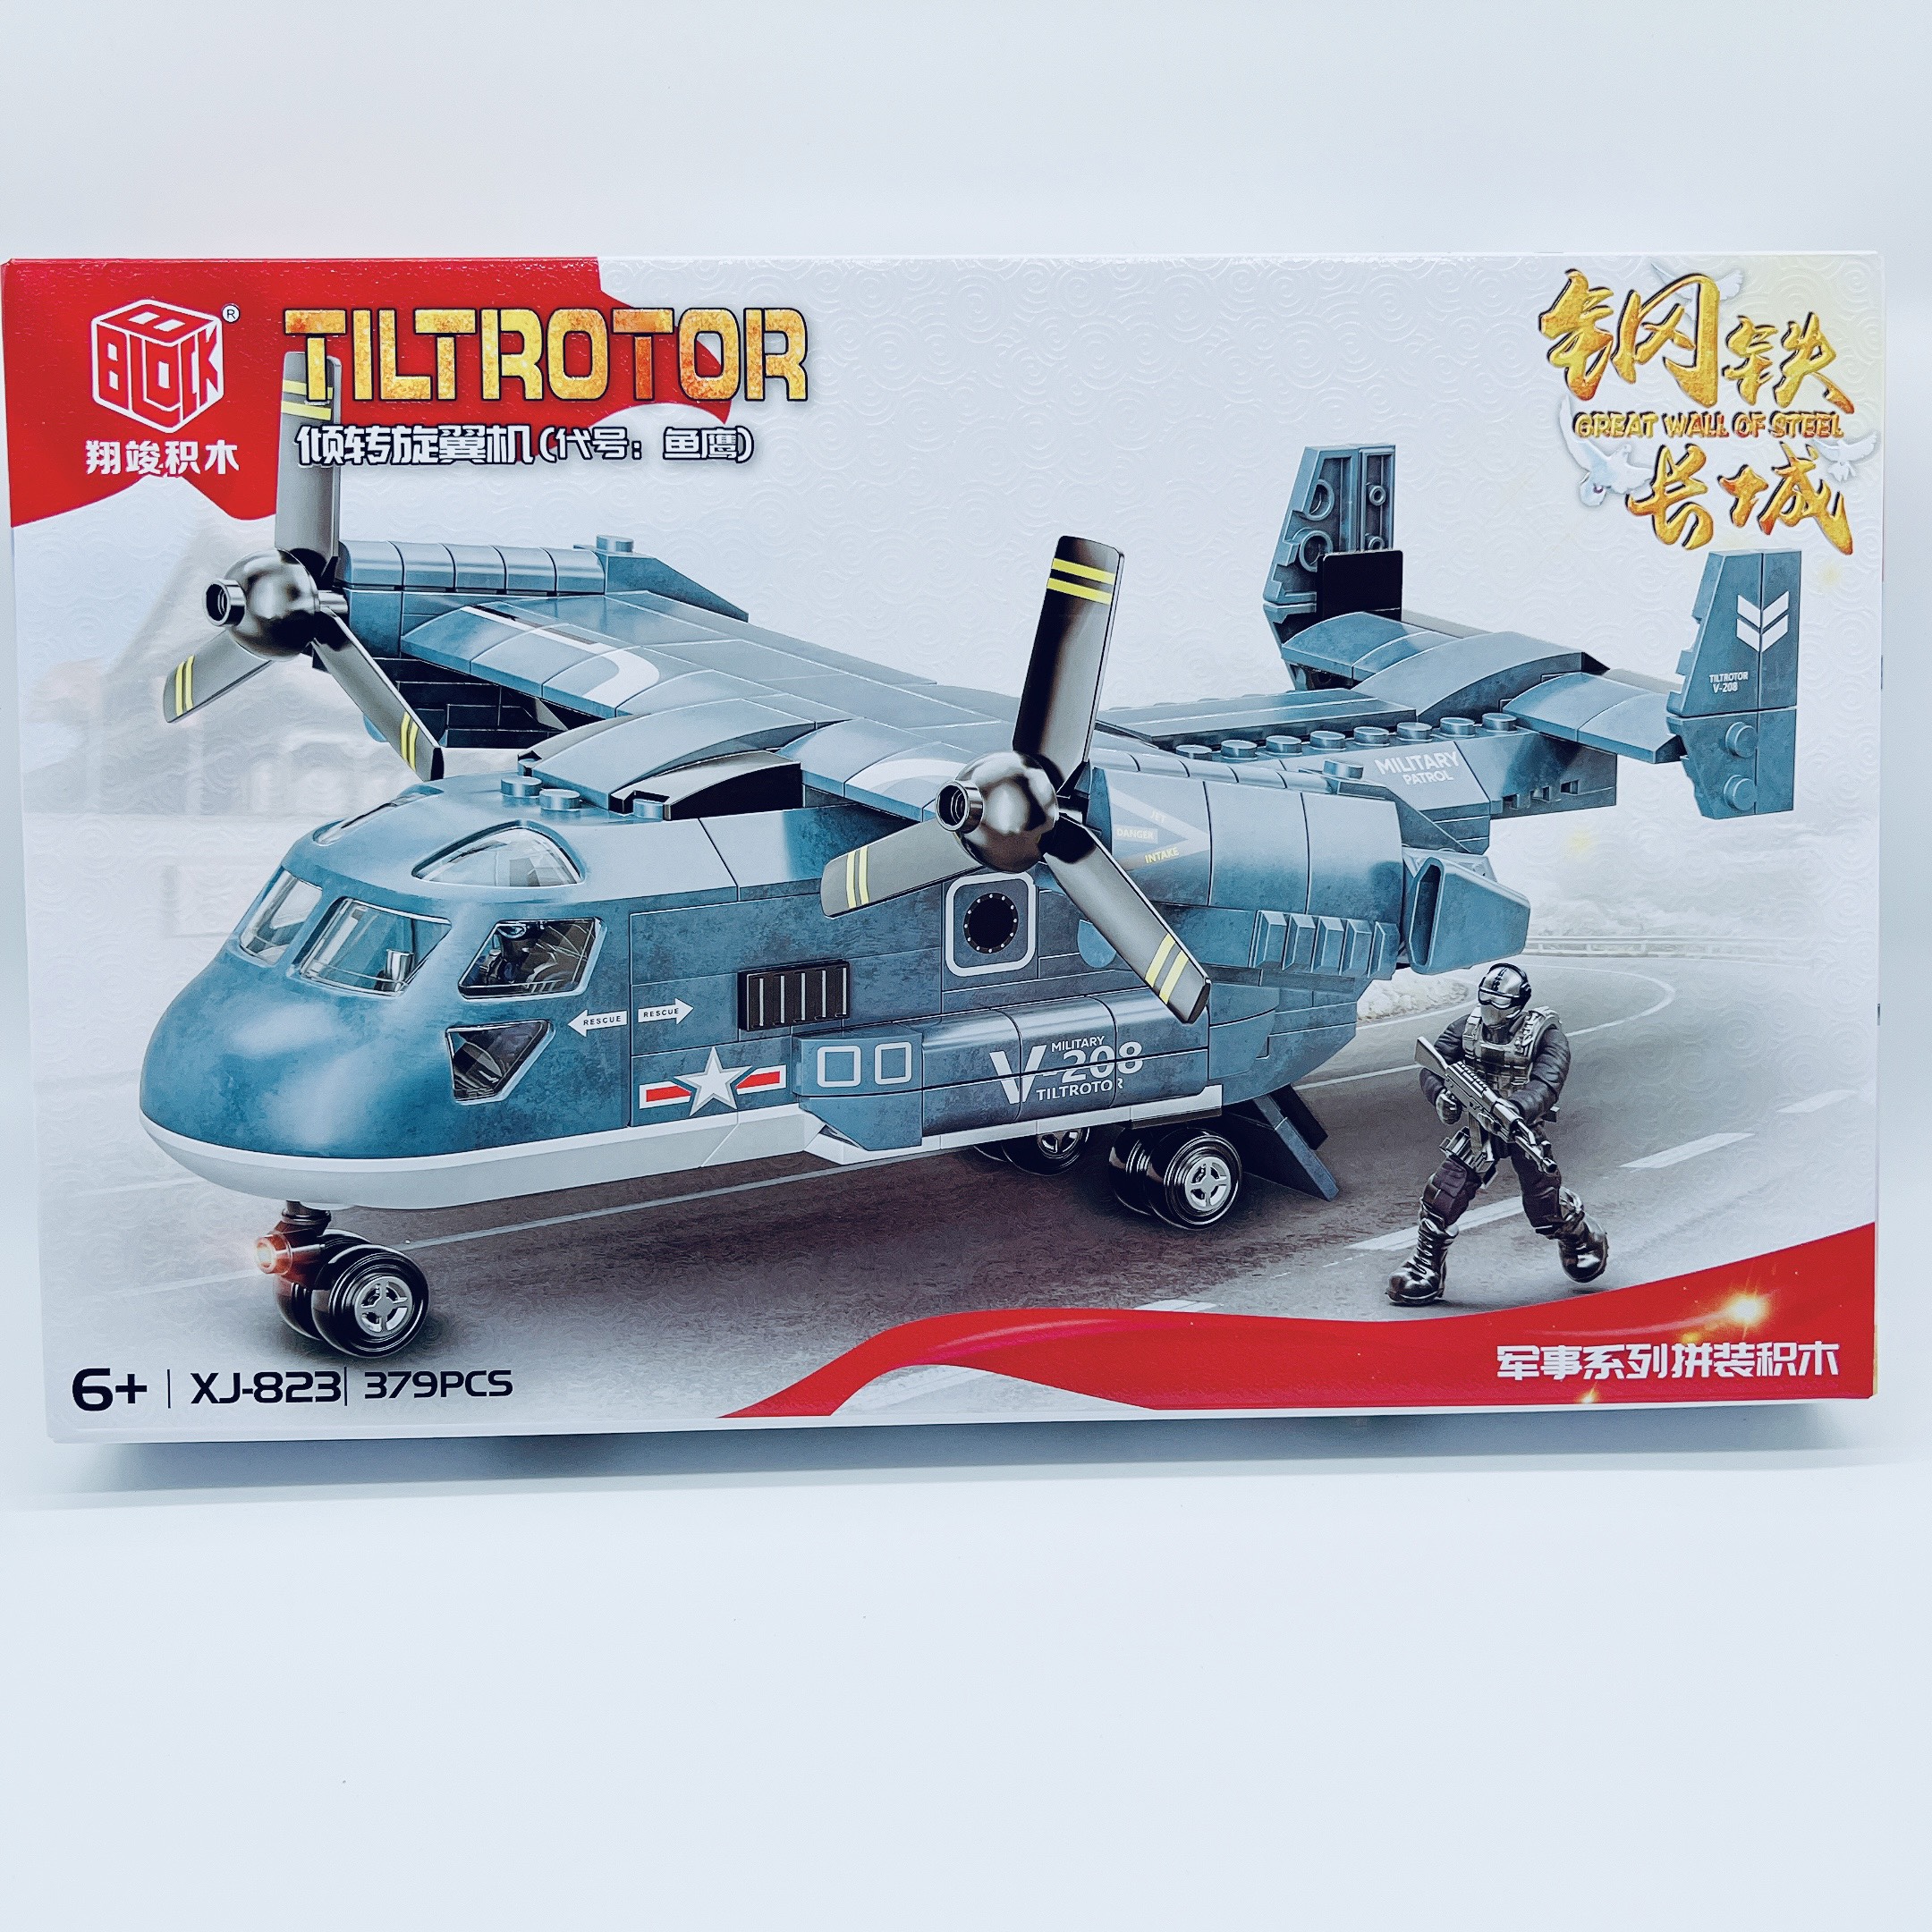 Lego máy bay chiến đấu , đồ chơi lego mini may bay chiến 823xj 451 chi tiết nhựa abs - Quà tặng kỹ năng cho bé